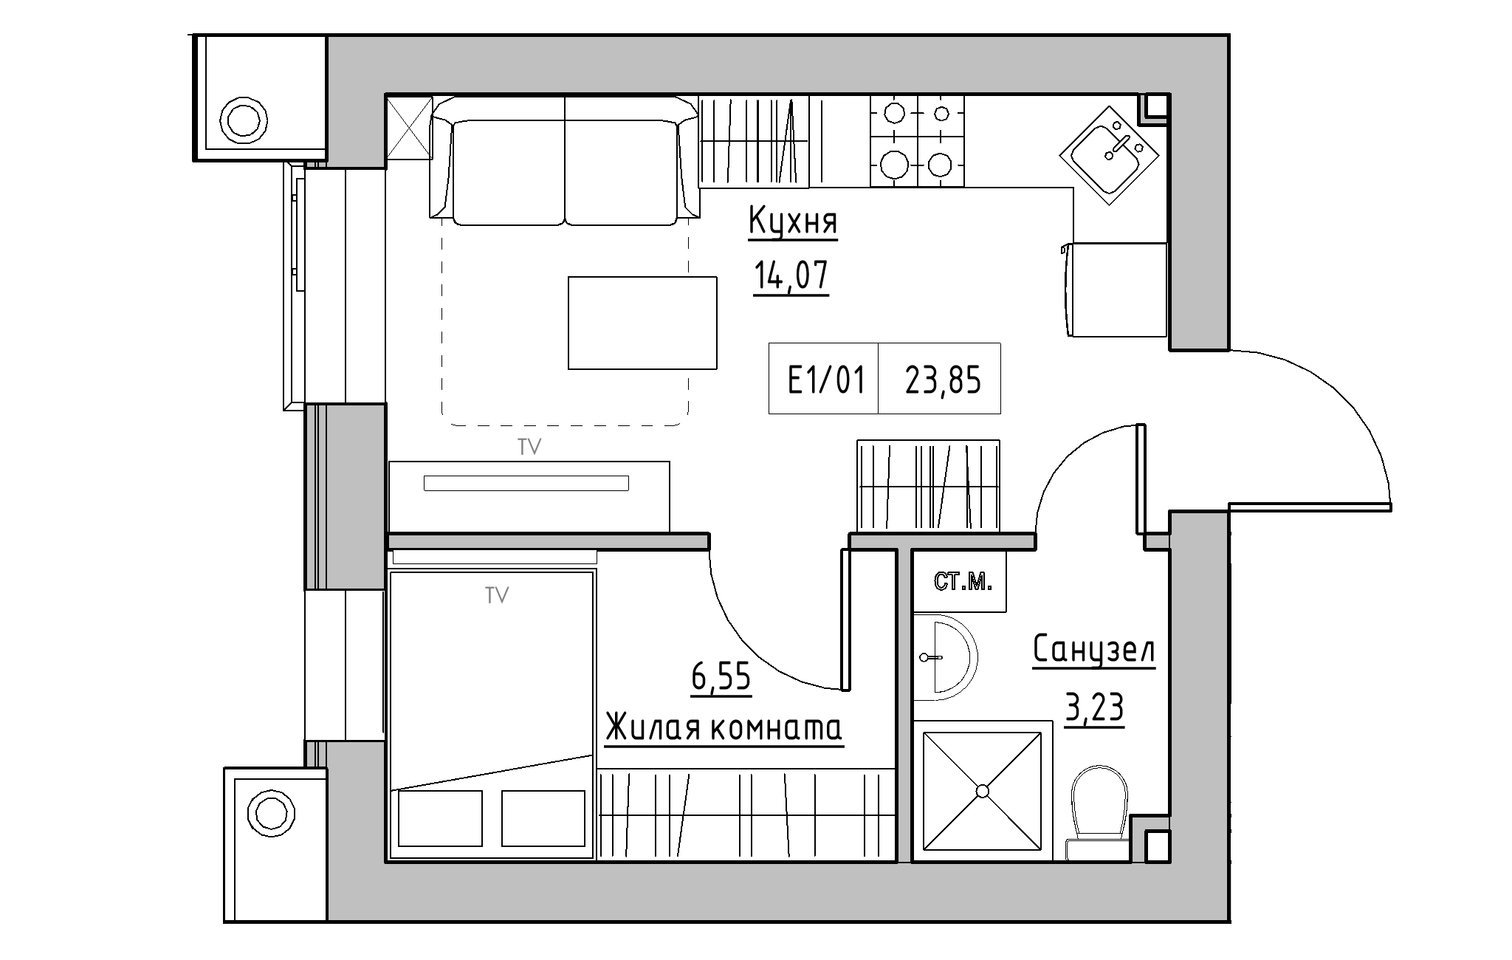 Планировка 1-к квартира площей 23.85м2, KS-013-02/0003.